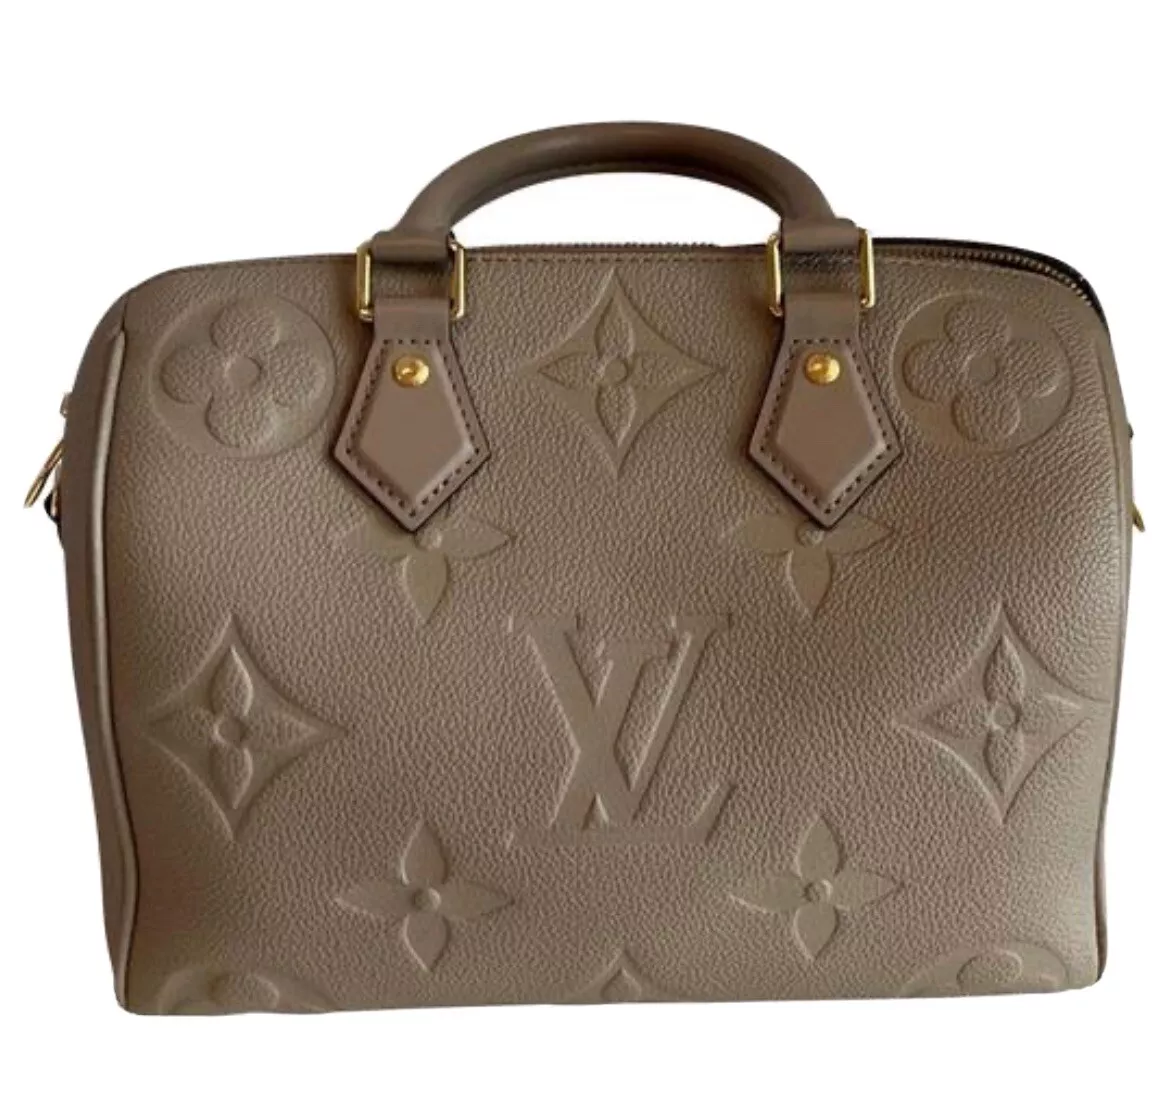 Pre-Loved Louis Vuitton Monogram Empreinte Speedy Bandouliere 25